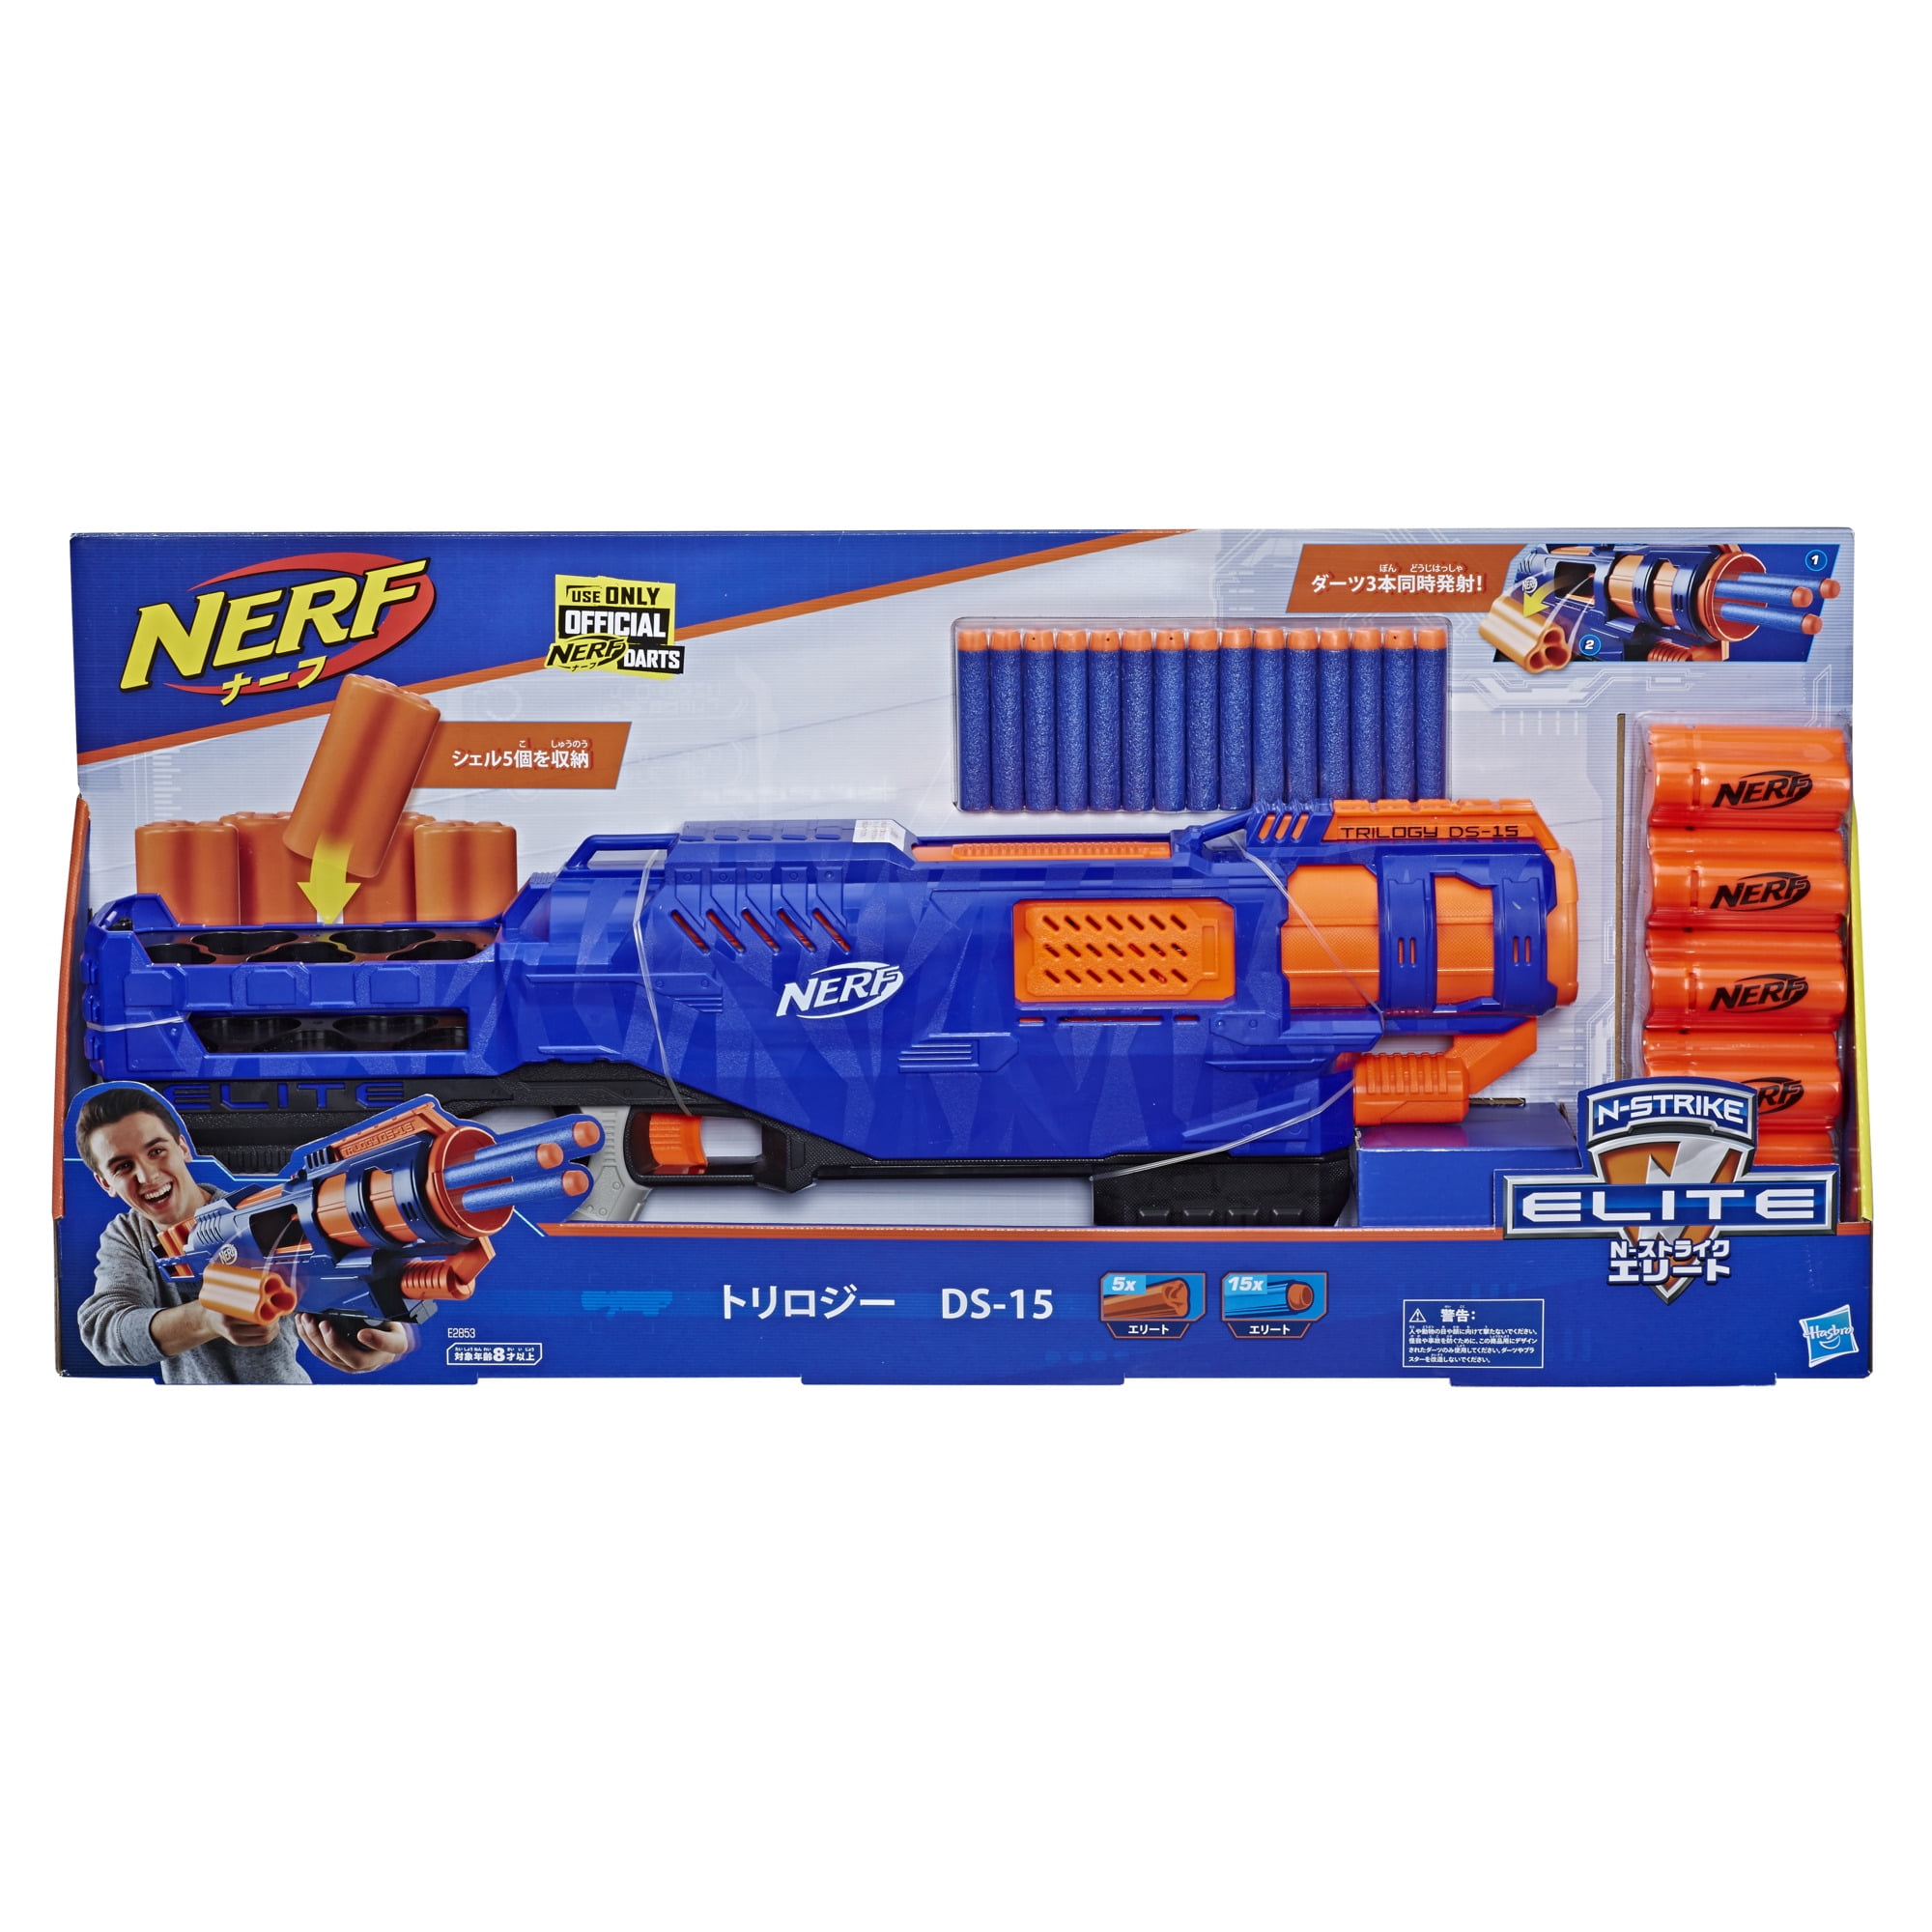 Nerf N Strike Elite Trilogy DS-15 Toy Blaster w/ 15 Nerf Darts Christmas Gift 